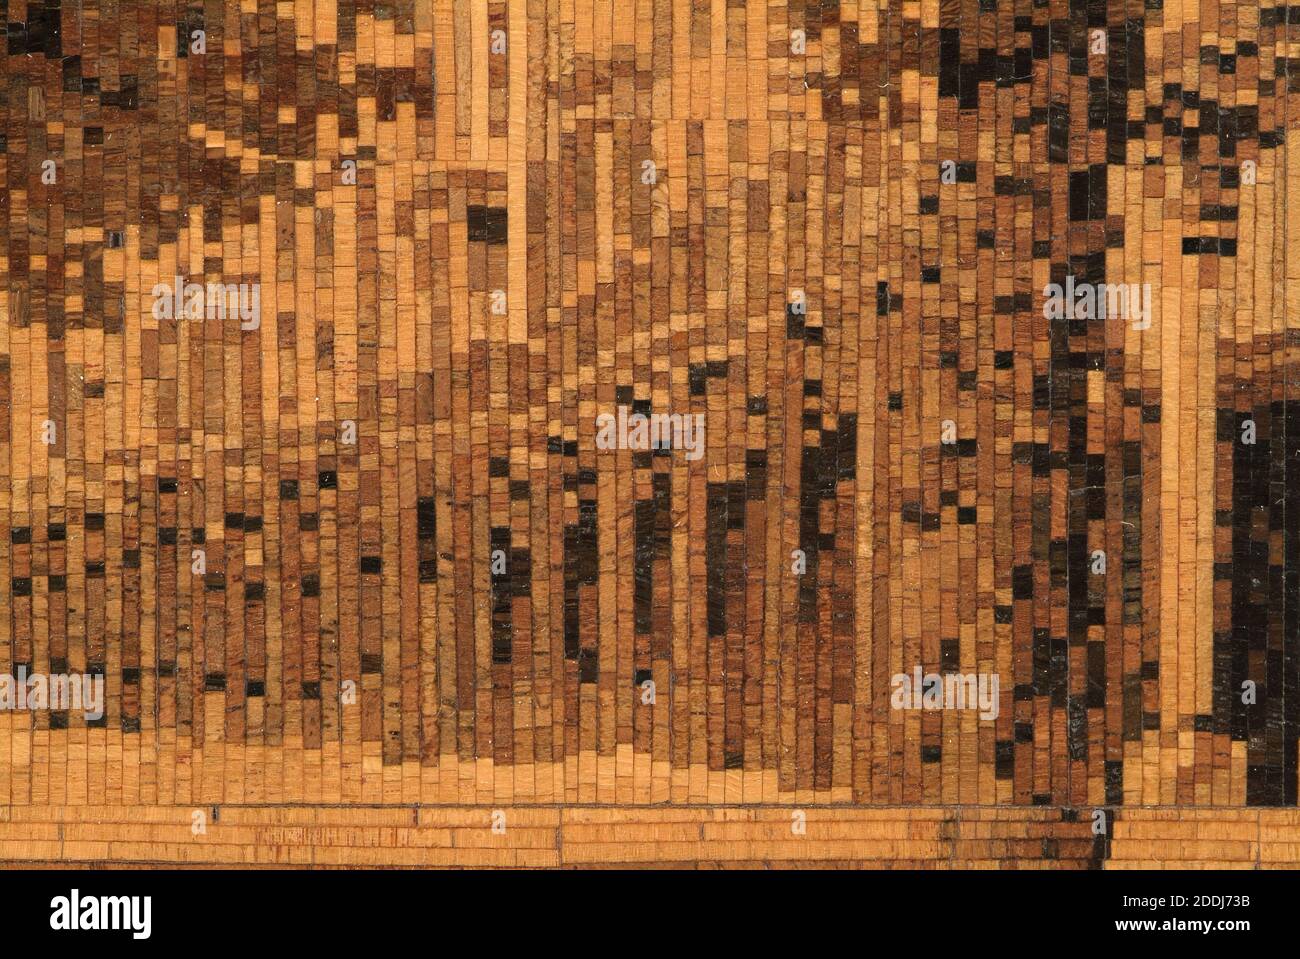 Die Pantiles, 1840-60 Panel, eingelegte Tunbridgeware Bild und Rahmen. Sowohl der Rahmen als auch das Bild der Pantiles, Tunbridge Wells, wurden in einem Endkorn-Mosaik hergestellt. Es wurde von James Brown während eines Lehrlings in der Hollamby Werkstatt um 1850 gemacht. Sozialgeschichte, Holz, England, Kent Stockfoto